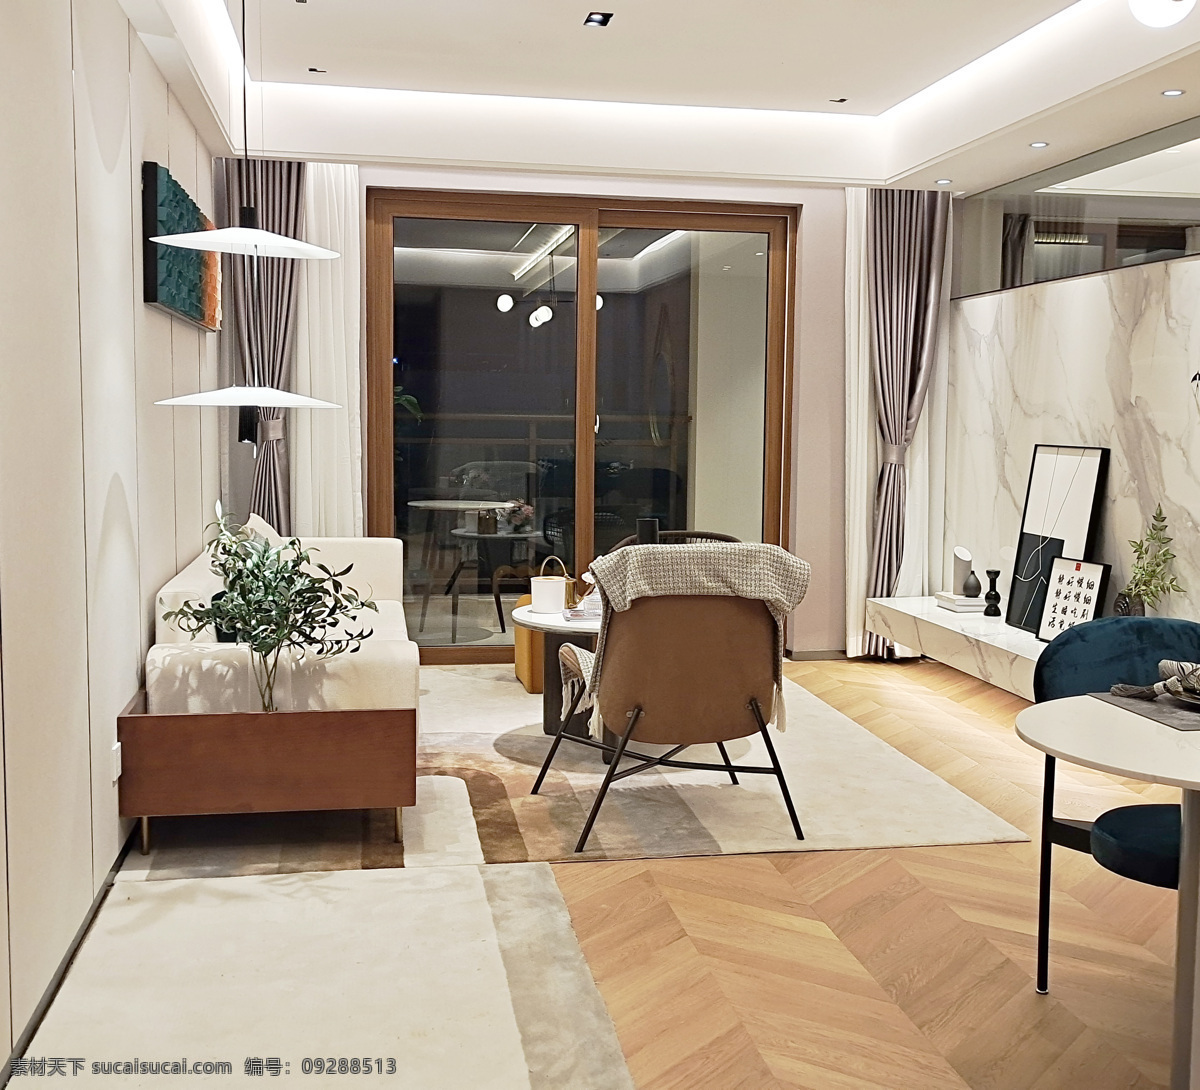 新 中式 客厅 装修 客厅装修 新中式 小客厅 沙发 二人世界 背景墙 建筑园林 室内摄影